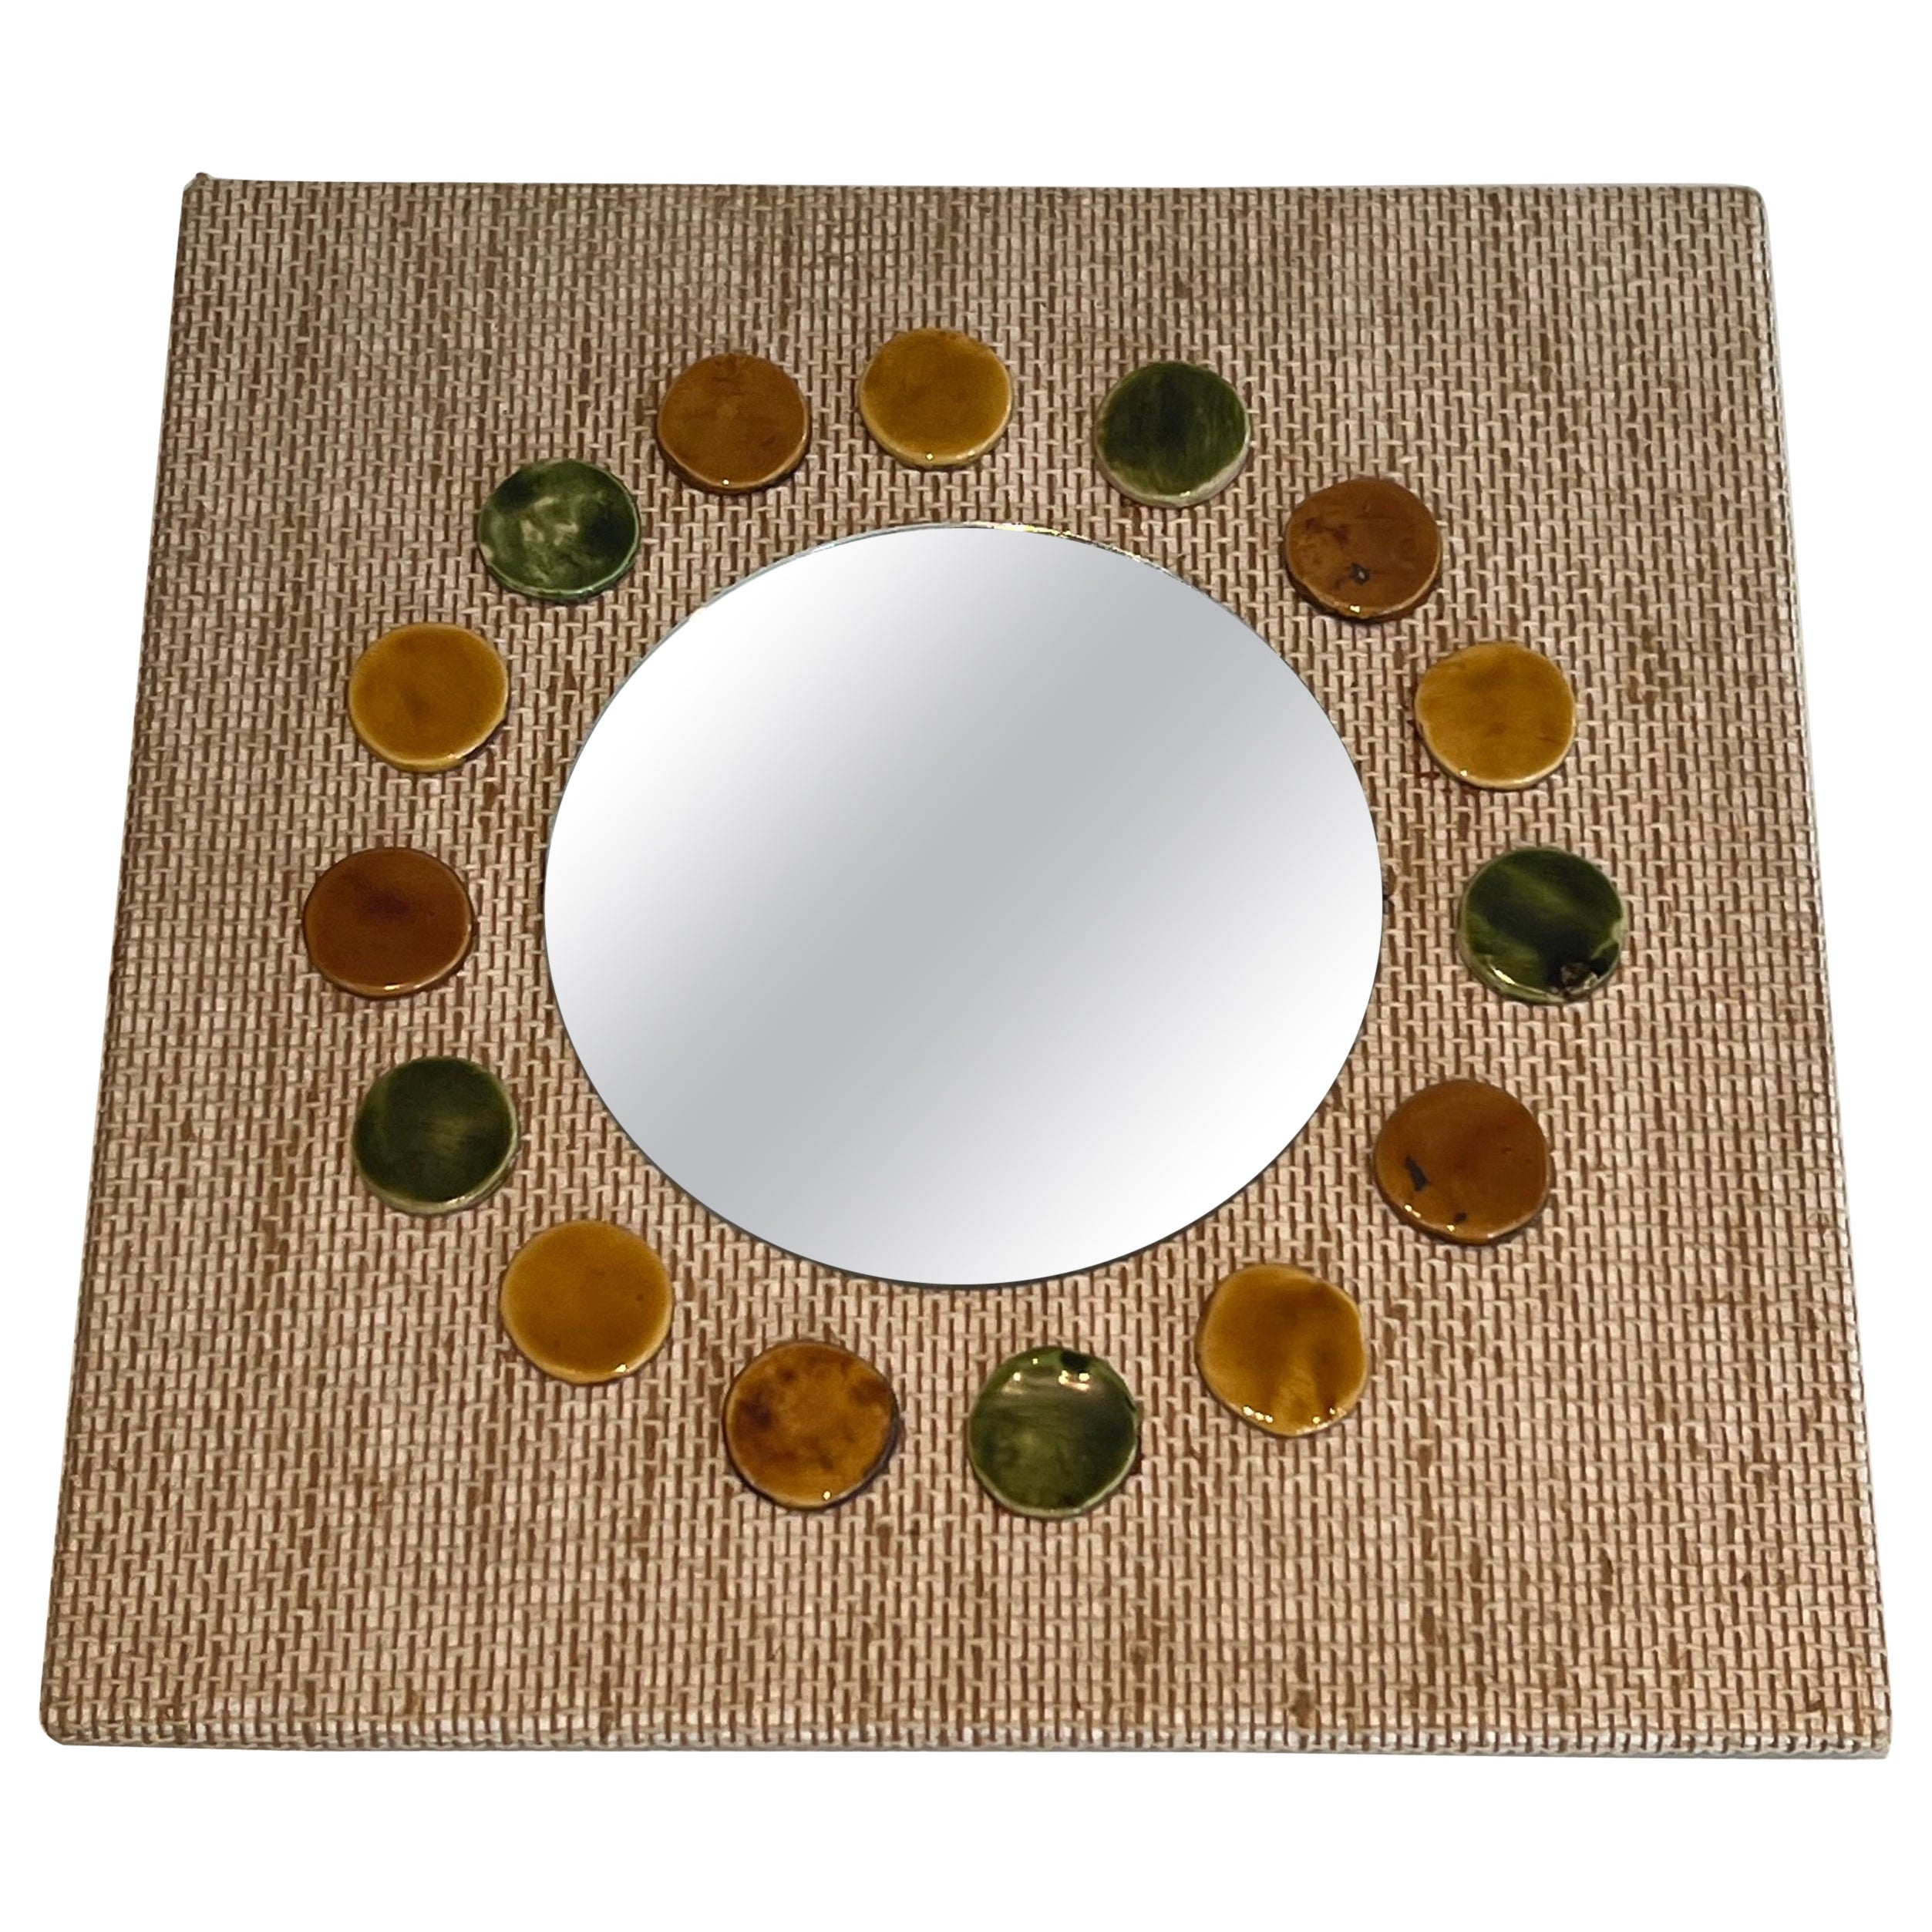 Small square mirror made of raffia en colored ceramics round elements. 